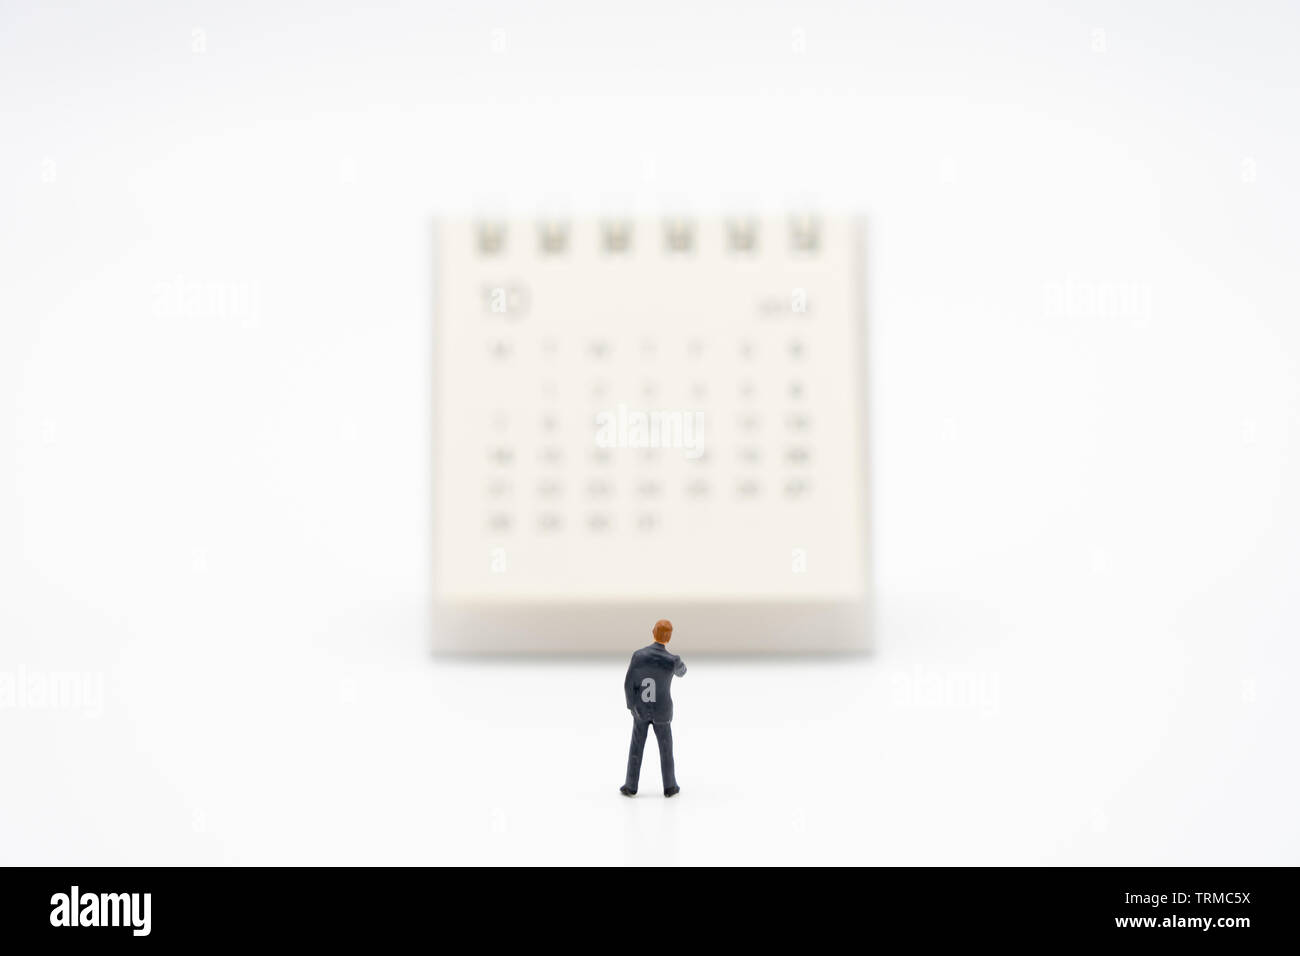 Miniatur Menschen Unternehmer stehen auf weißen Kalender als Hintergrund Business Konzept und Finanzierung Konzept mit Kopie Platz für Ihren Text oder de Stockfoto